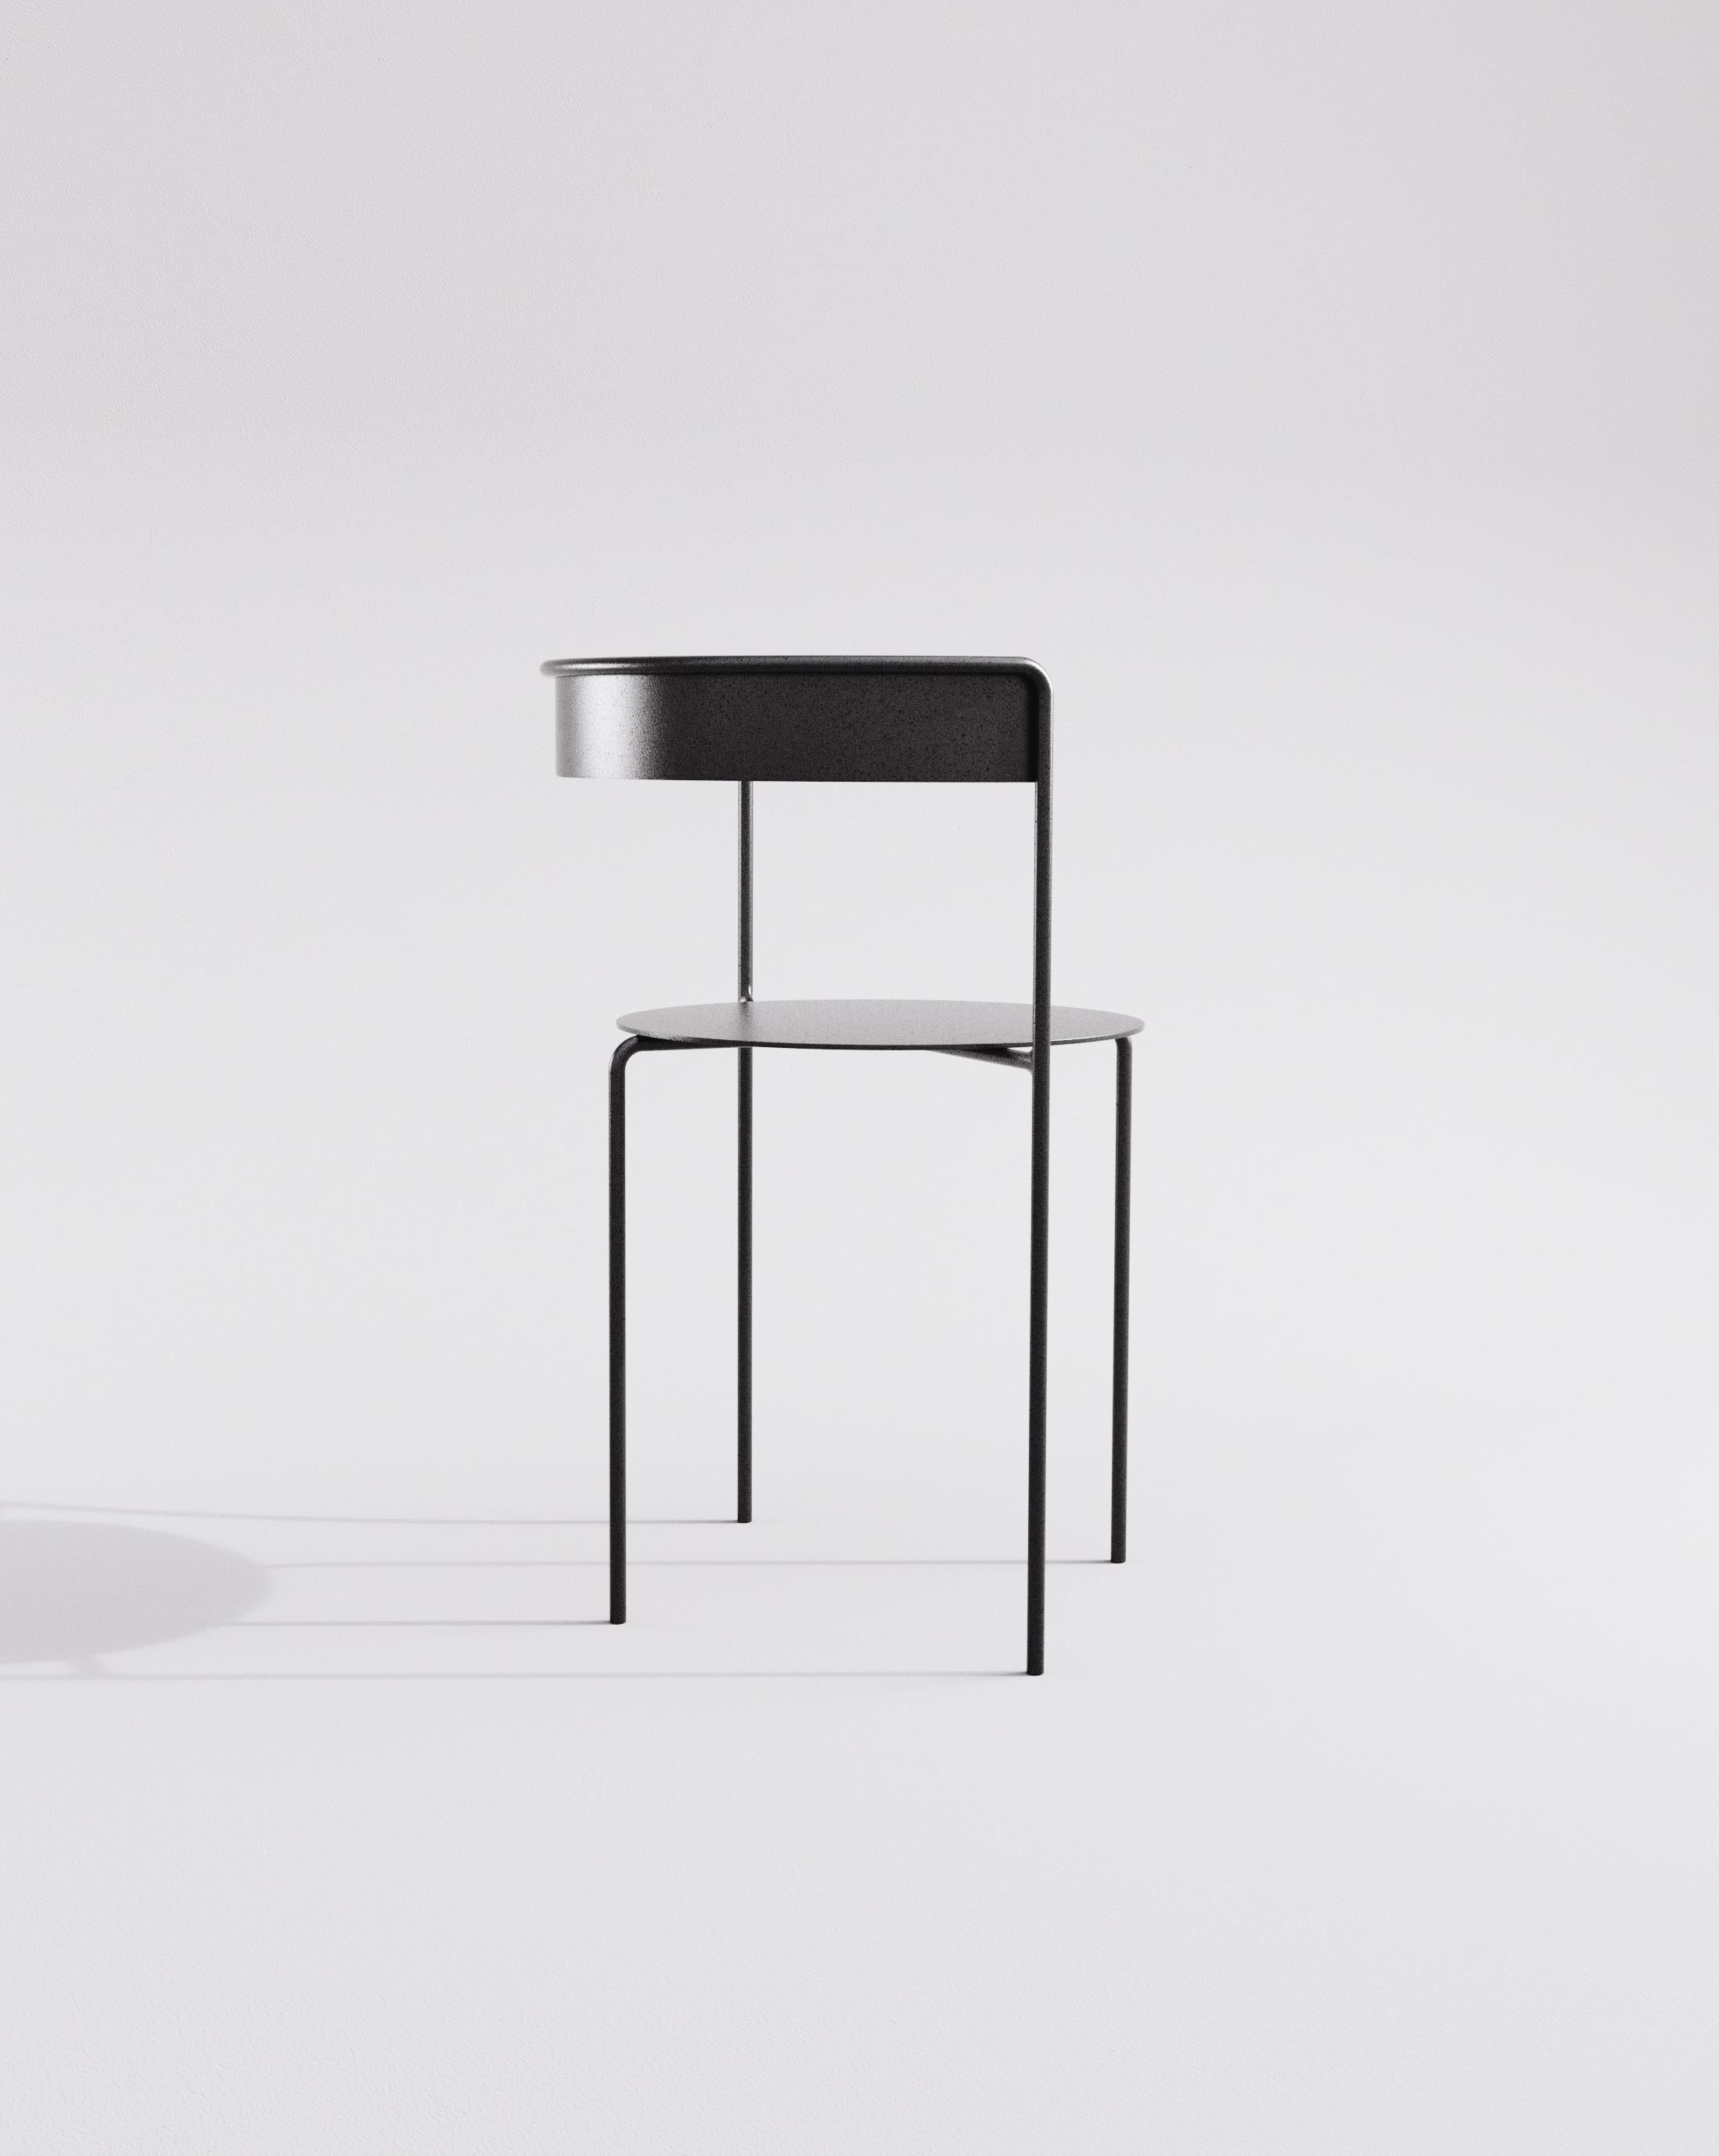 Die Motivation für die Entwicklung des Avoa Chair (MMXIII) ist autotelia, der autonome Designdiskurs. Die Herausforderung bestand darin, ein Objekt als Zitat zu betrachten, eine Wiederaufnahme der minimalen Elemente, die einen Stuhl ausmachen: